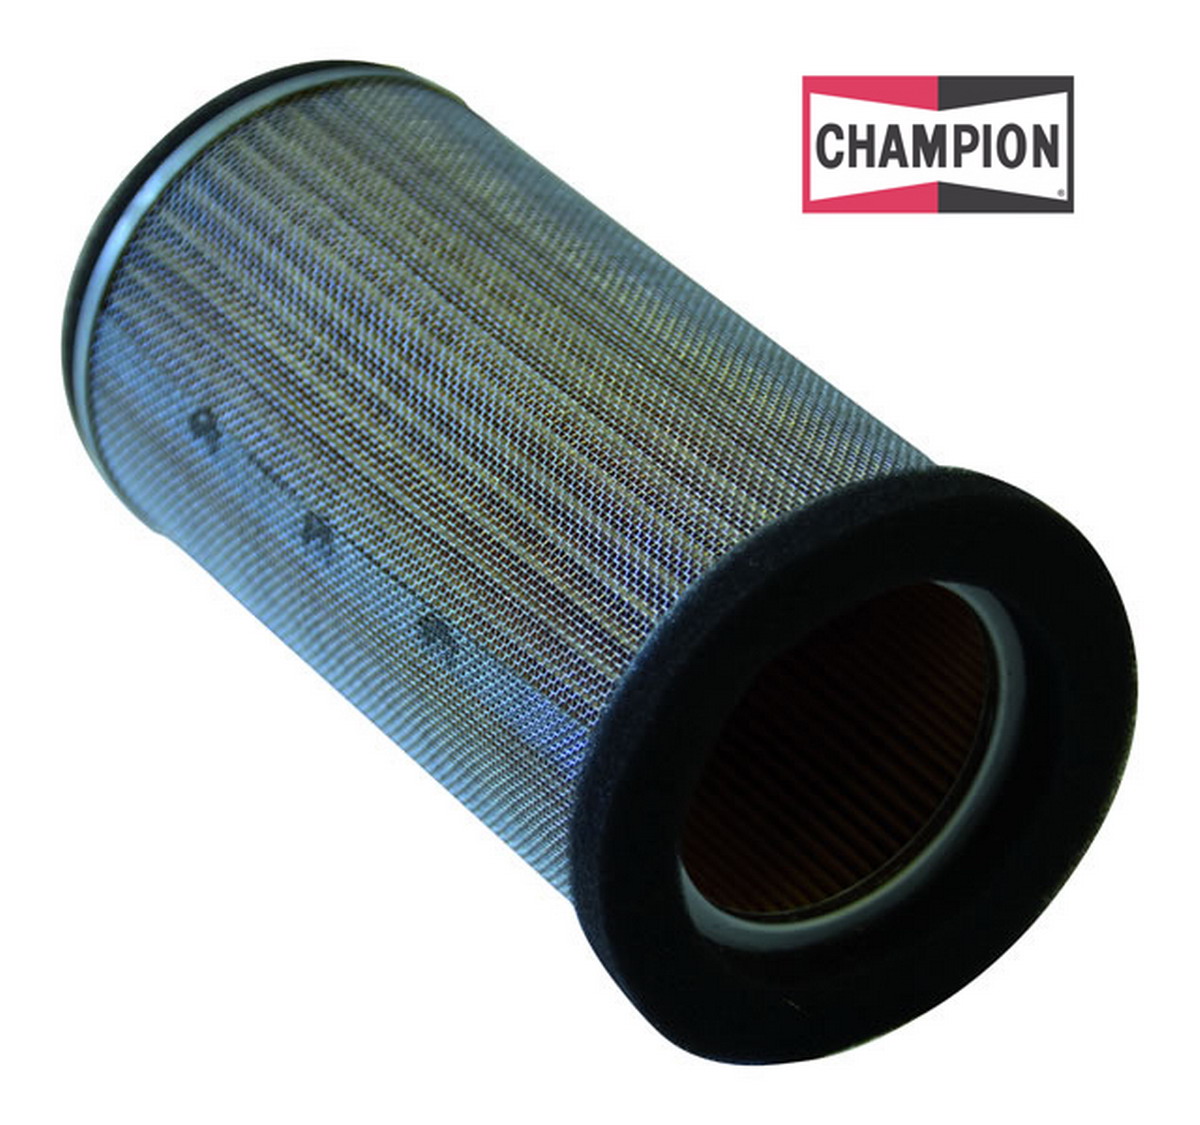 Obrázek produktu Vzduchový filtr CHAMPION Y342/301 100604895